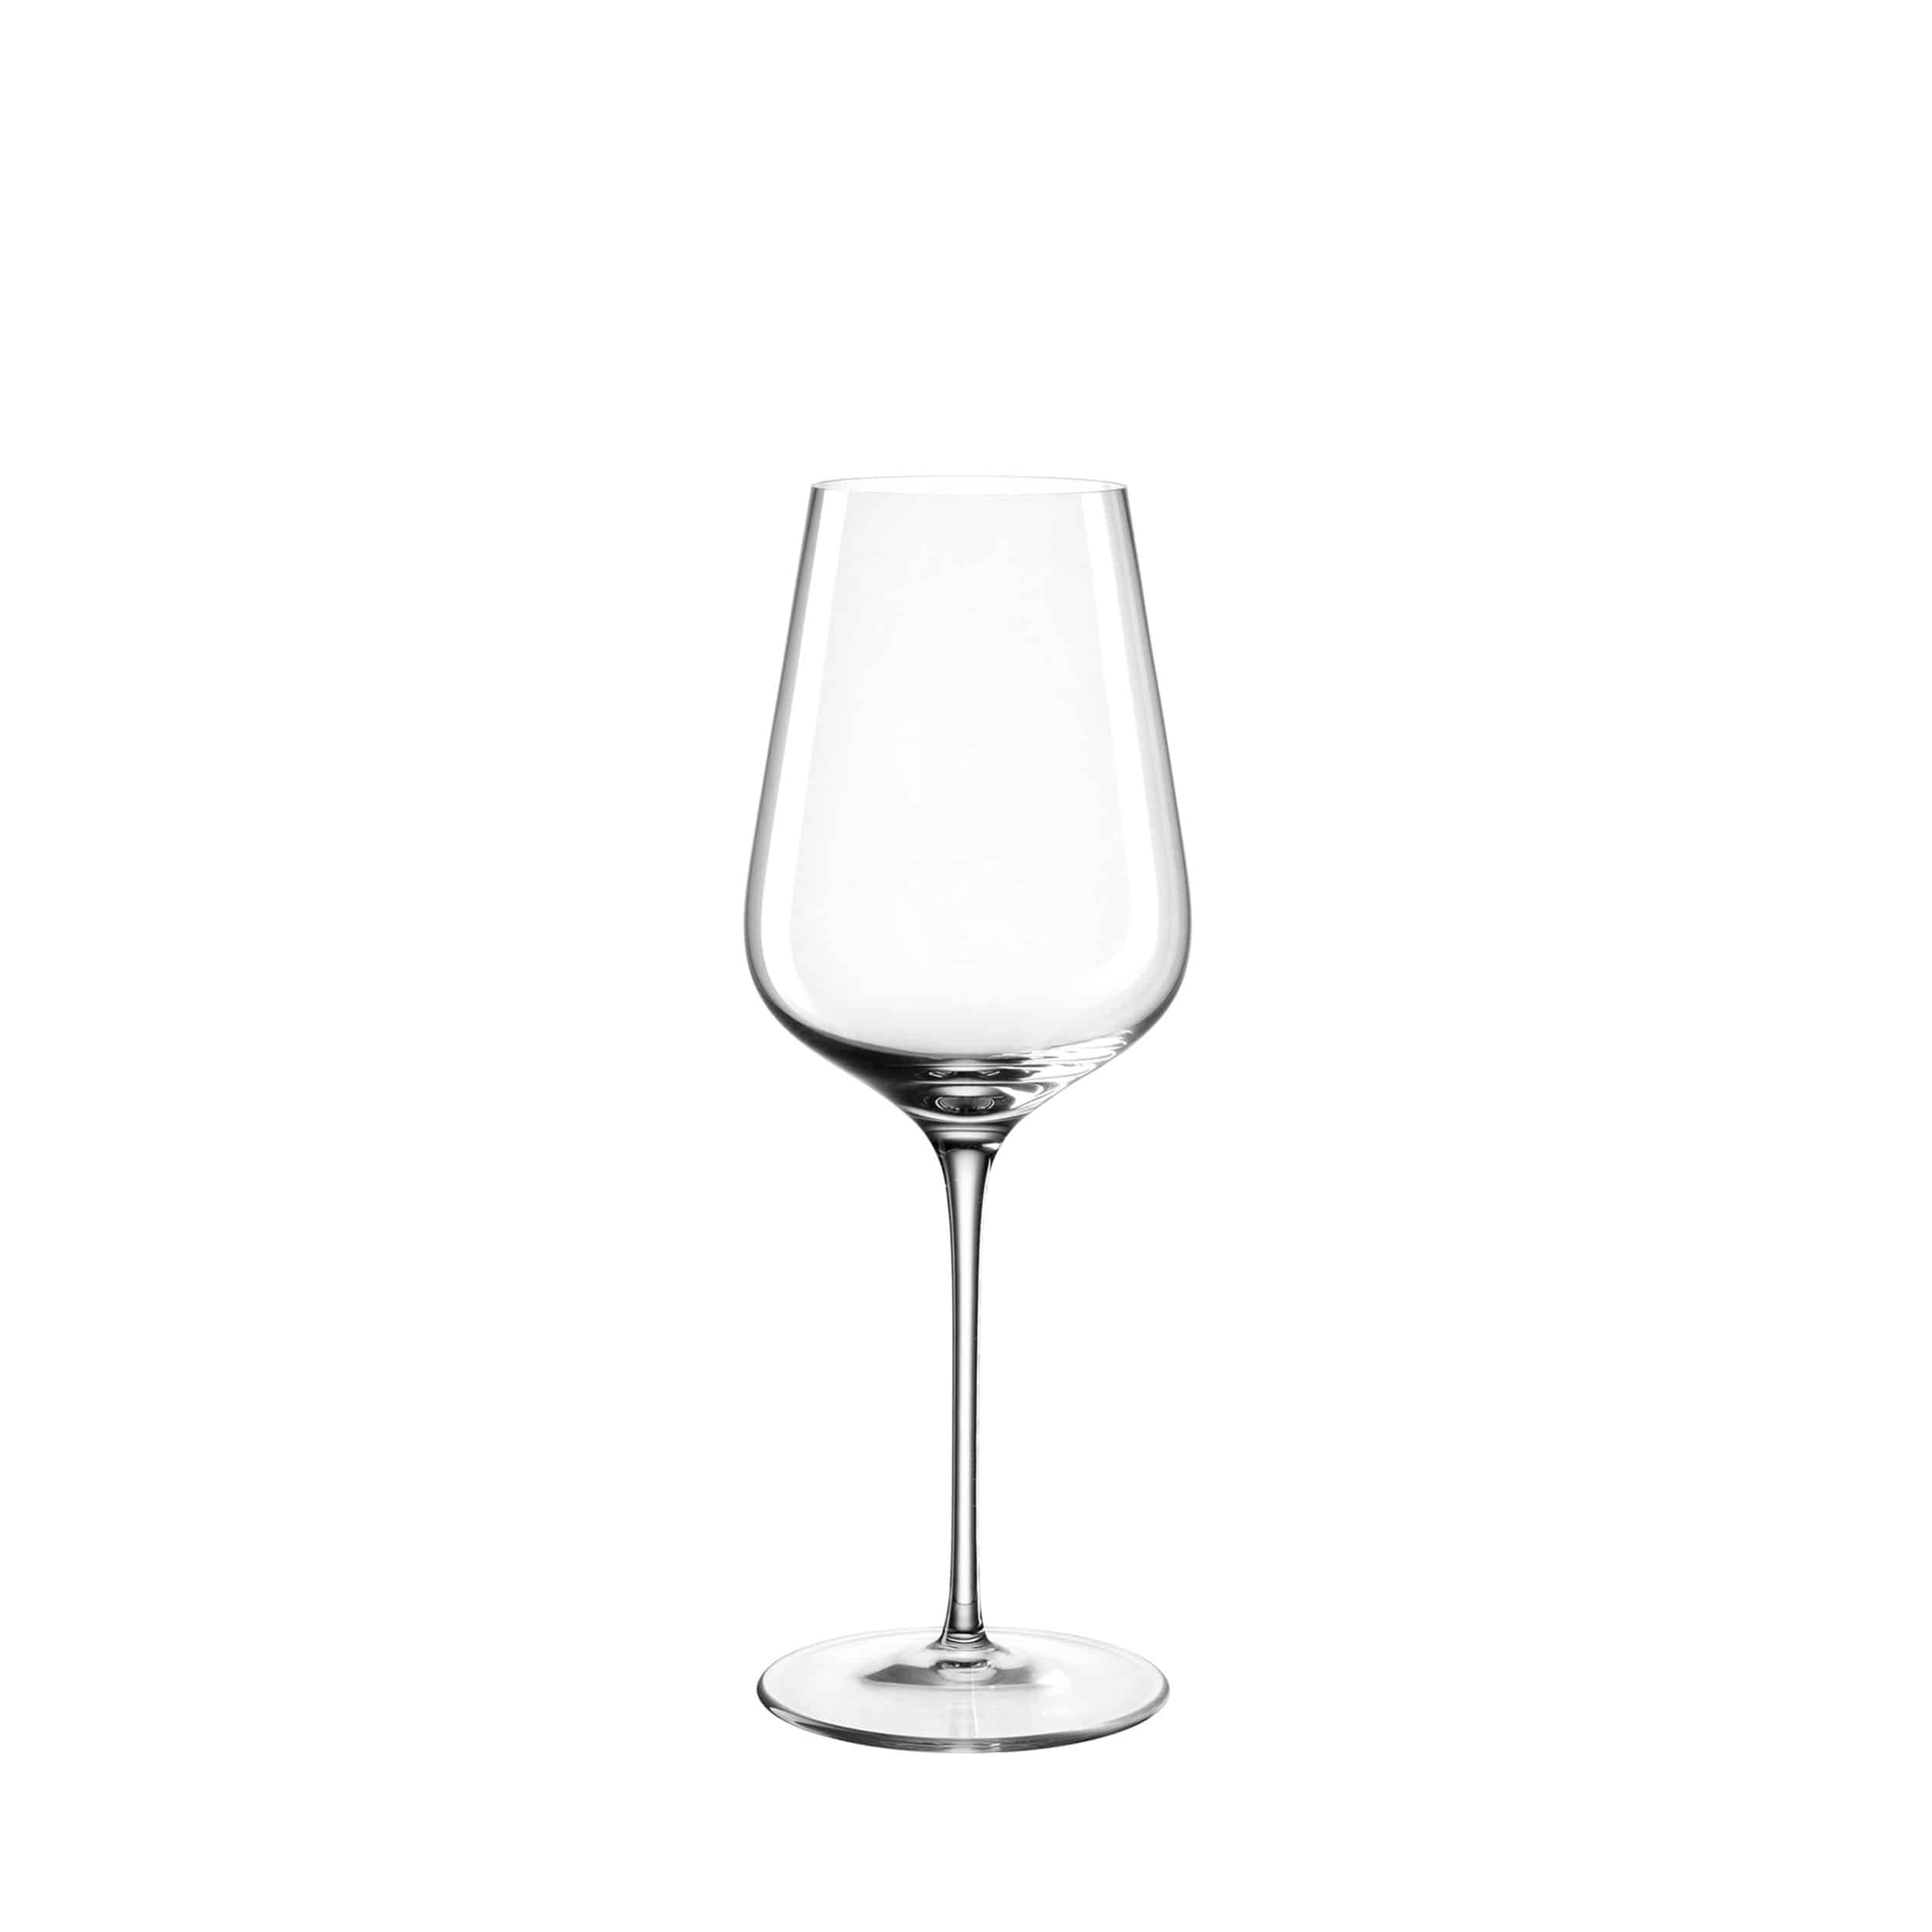 Brunelli Riesling Weißweinglas